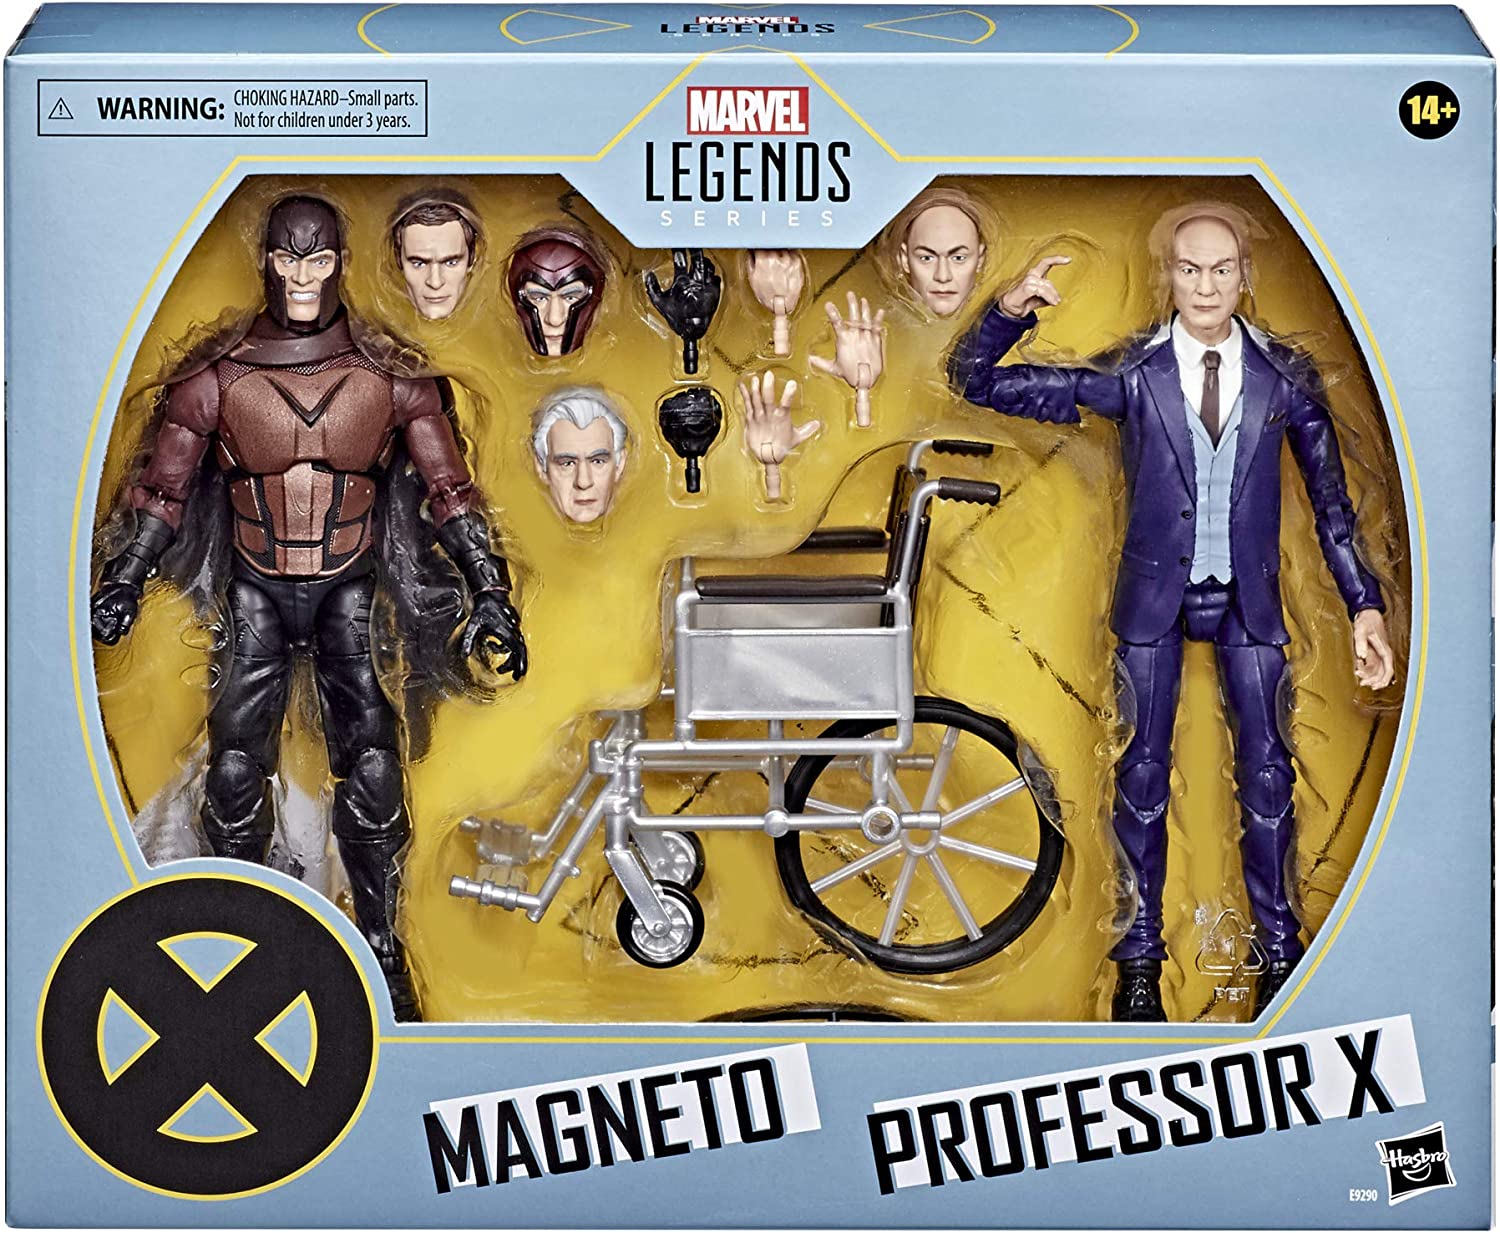 E9284 for sale online Marvel Legends Series X-Men Mystique 6 inch Action Figure 